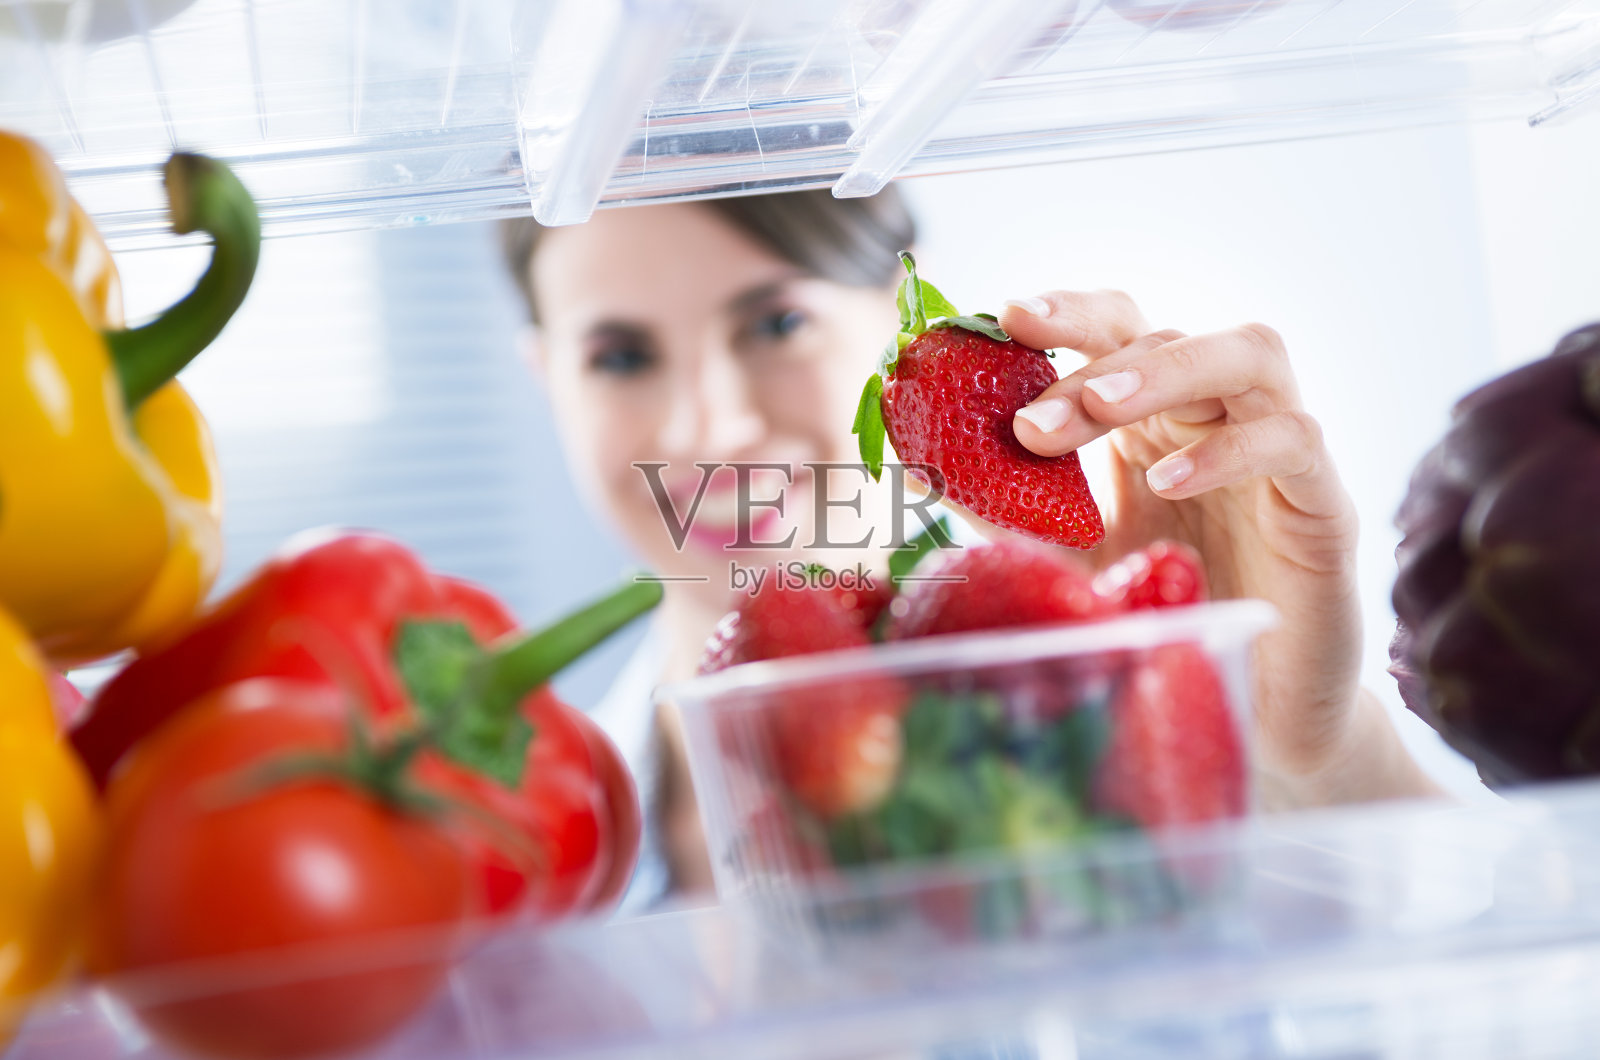 冰箱里的健康食品照片摄影图片